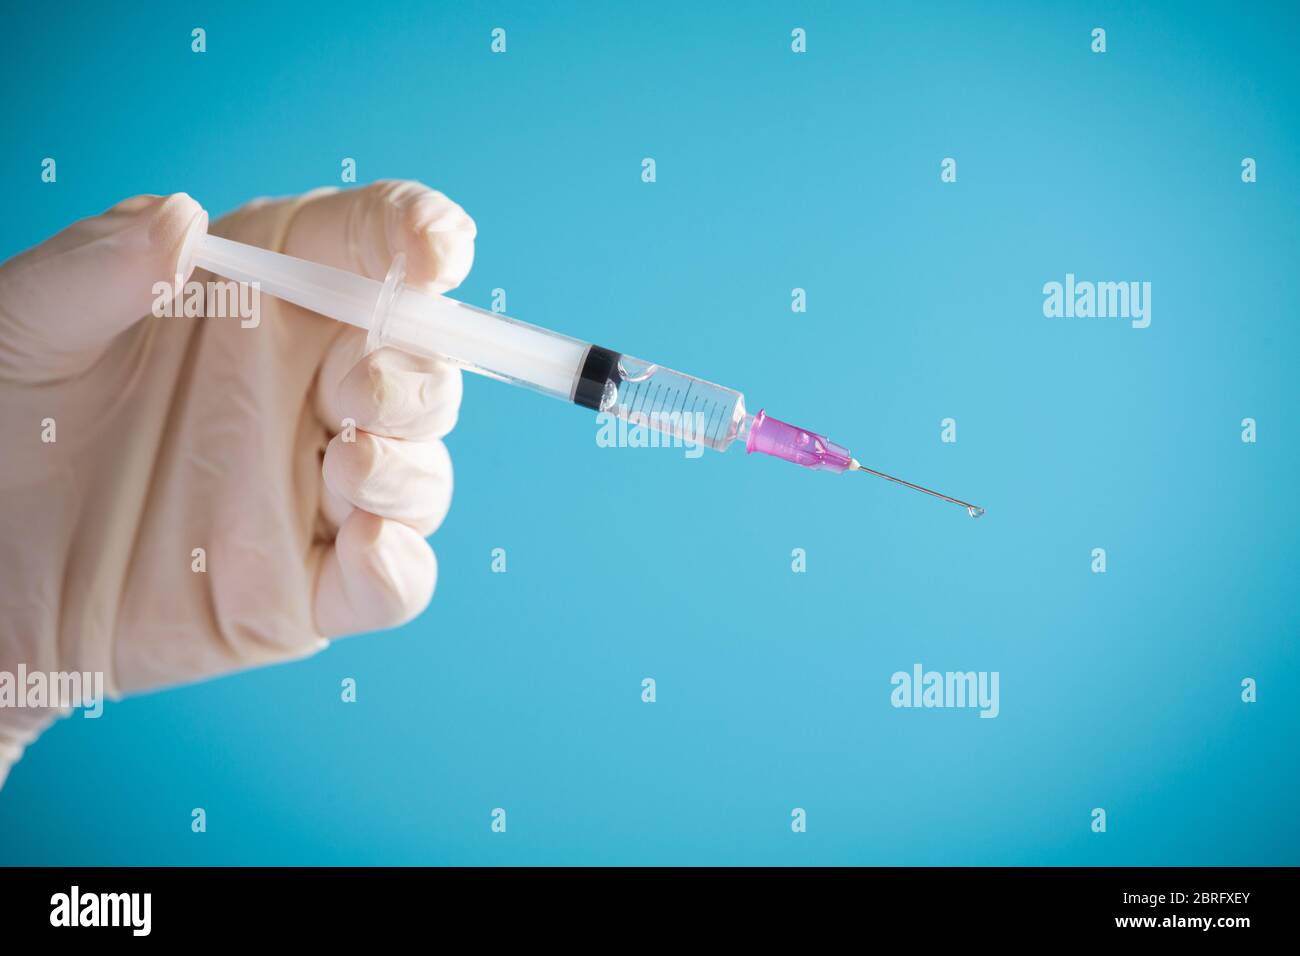 Doctor Hand halten Spritze Impfstoff für Corona-Virus auf isolieren blauen Hintergrund Konzept für Coronavirus Pandemie Krankheit, COVID-19 Virus aus Epidemie ou Stockfoto